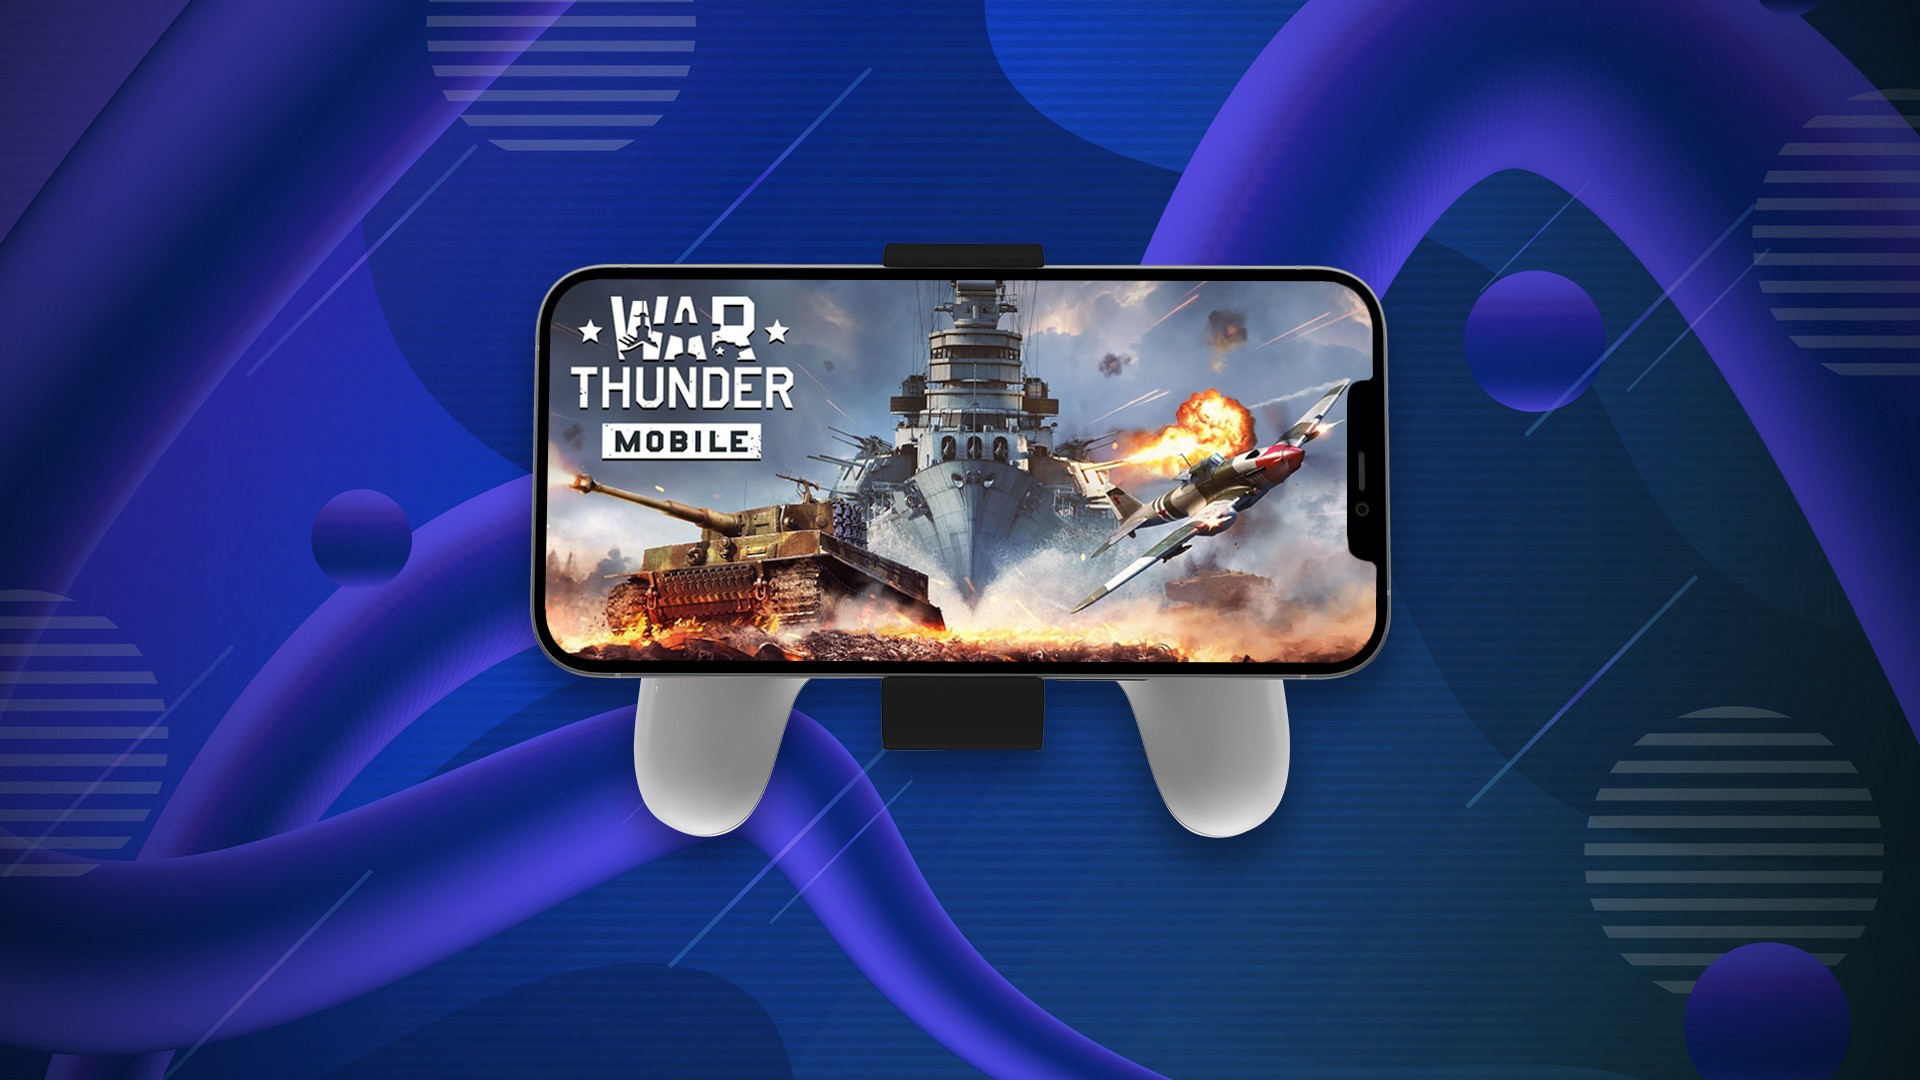 War Thunder Mobile - Apps on Google Play